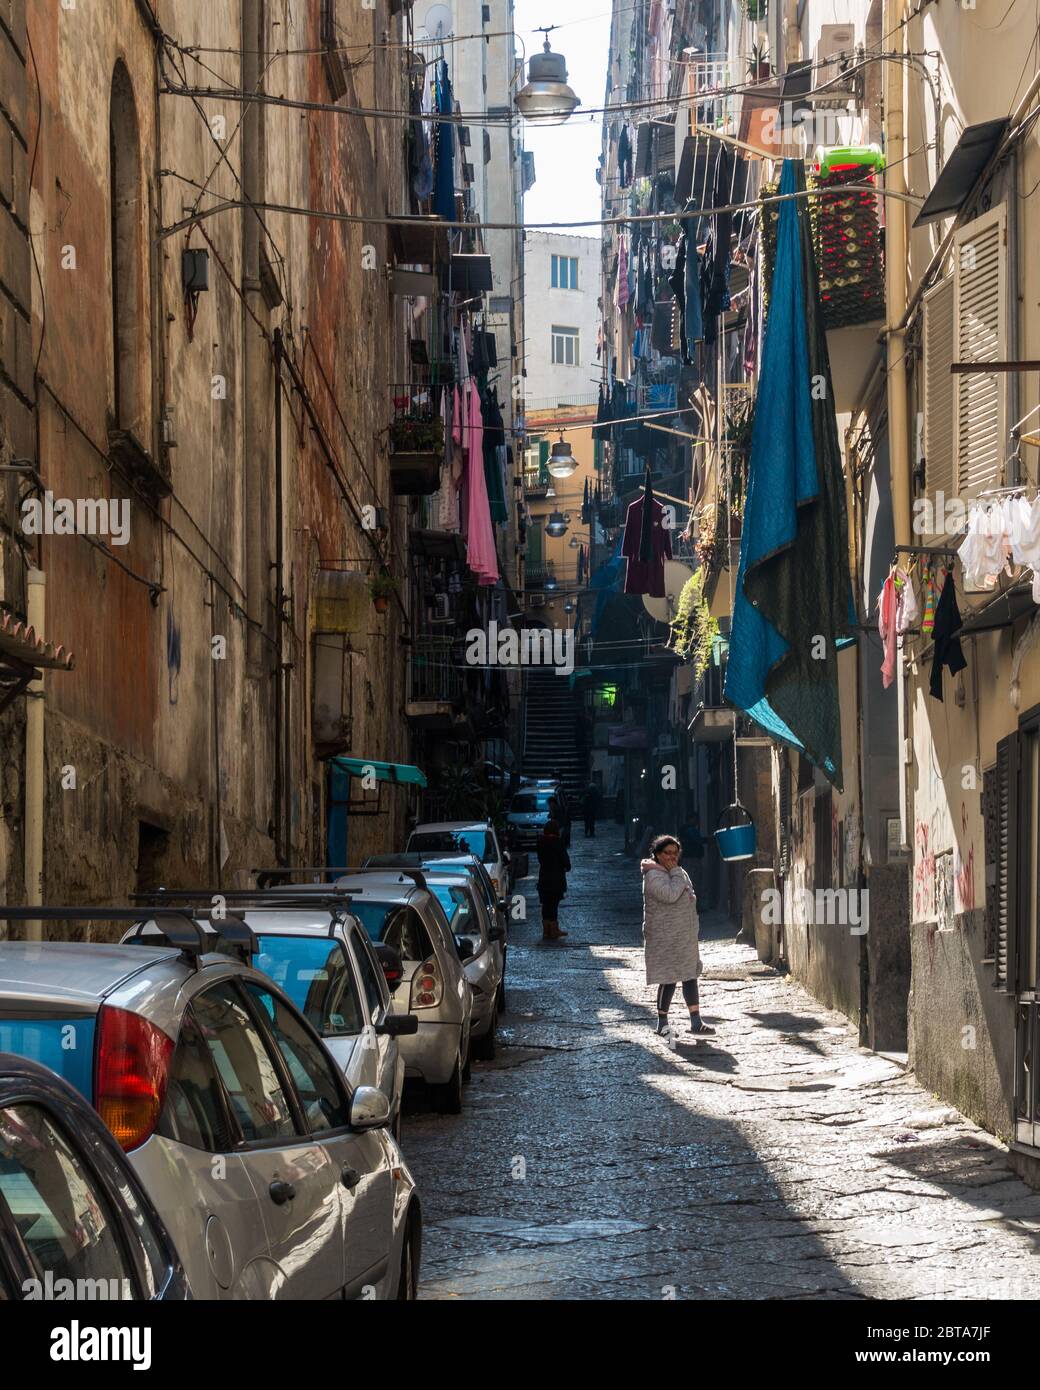 Neapel, Italien, 8. Februar 2020 – EINE typische Fußgängerzone von Rione Sanità mit Kleidung, die zum Trocknen von den Balkonen hängt Stockfoto